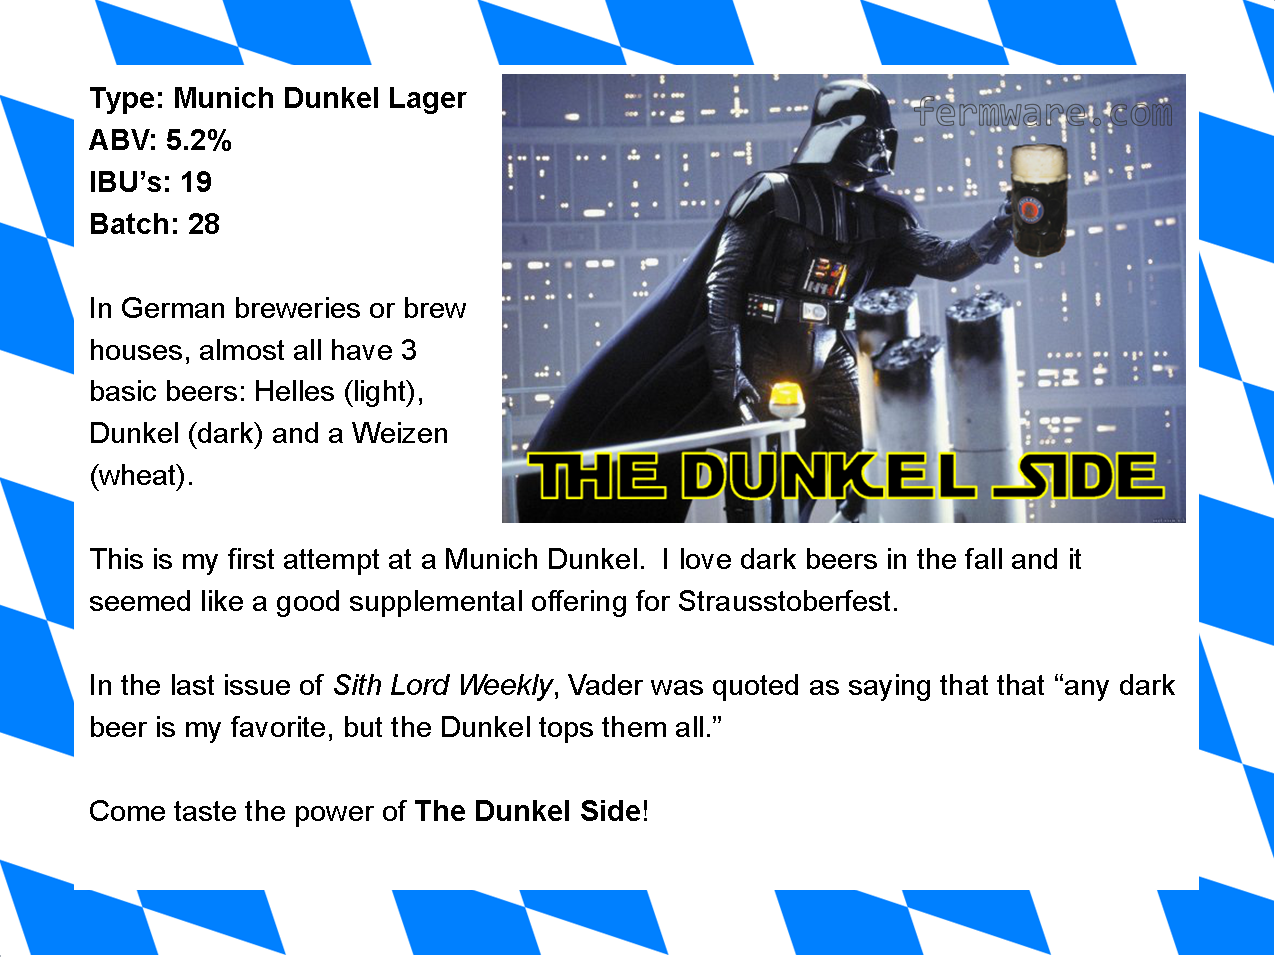 015-4-The-Dunkel-Side-label.png